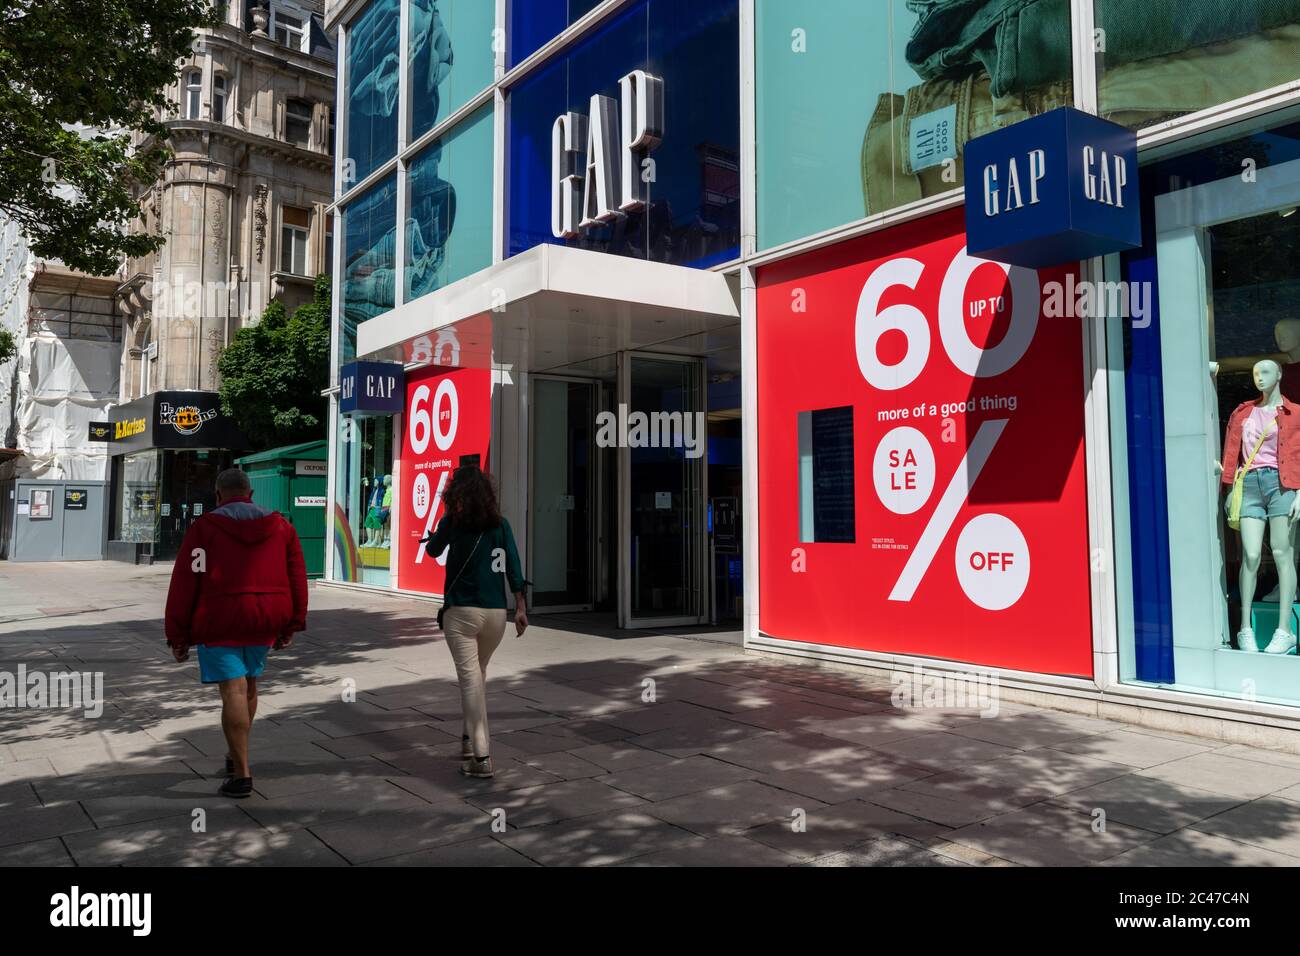 La tienda de la empresa de ropa al por menor Gap en Londres Oxford Street con grandes señales de reducción de precios de venta al lado de la entrada. Foto de stock